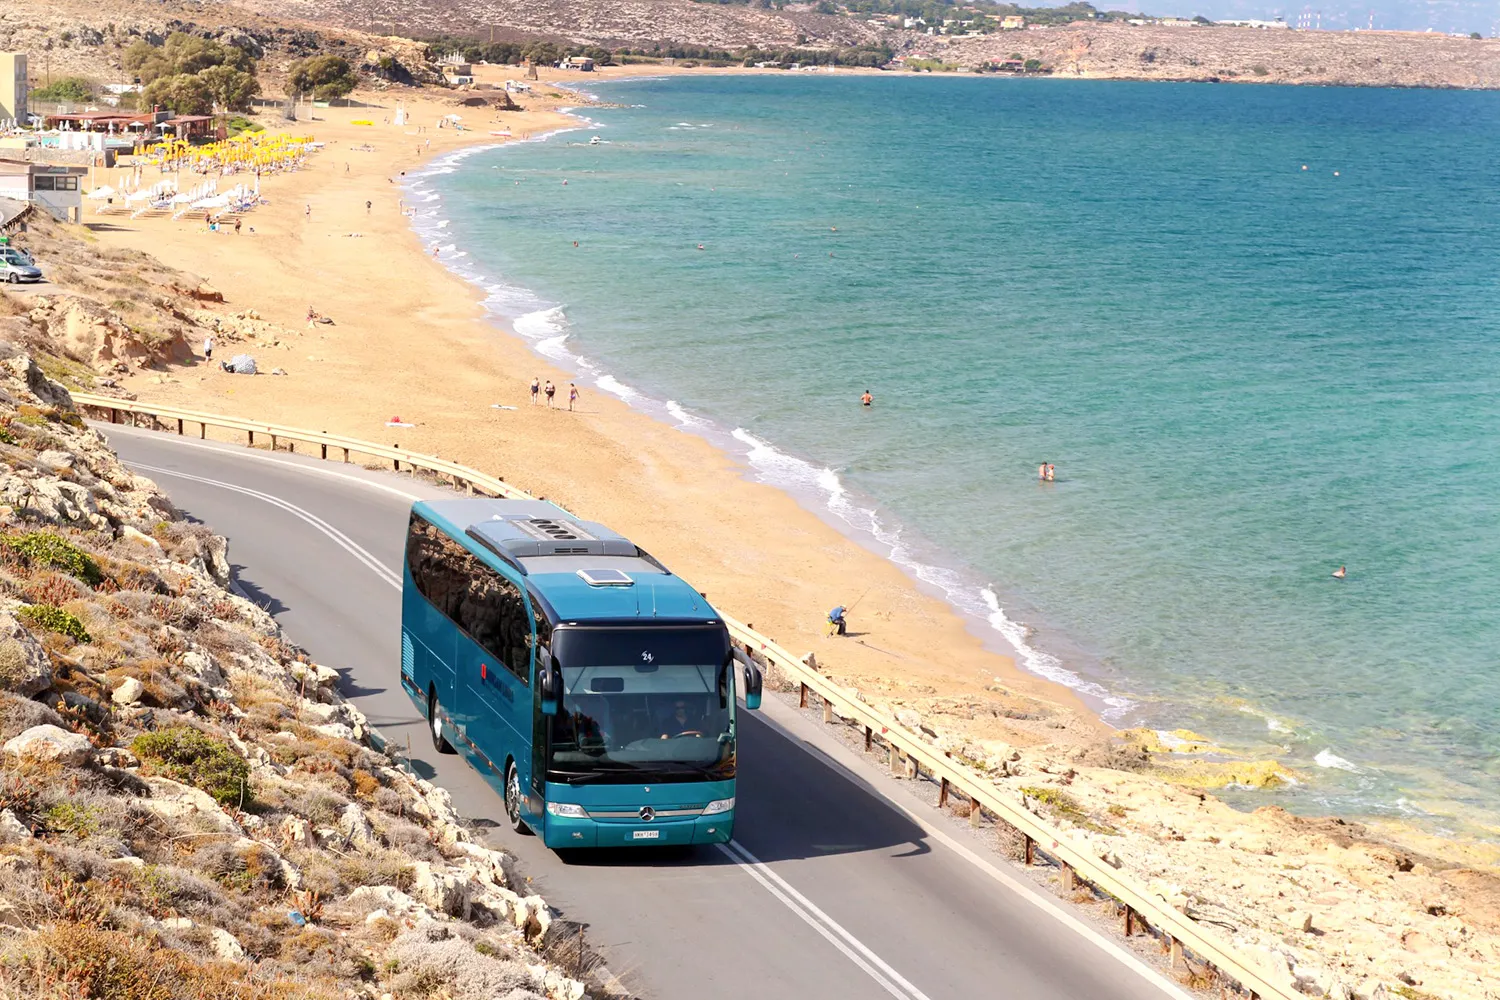 Автобусные туры на Чёрное море